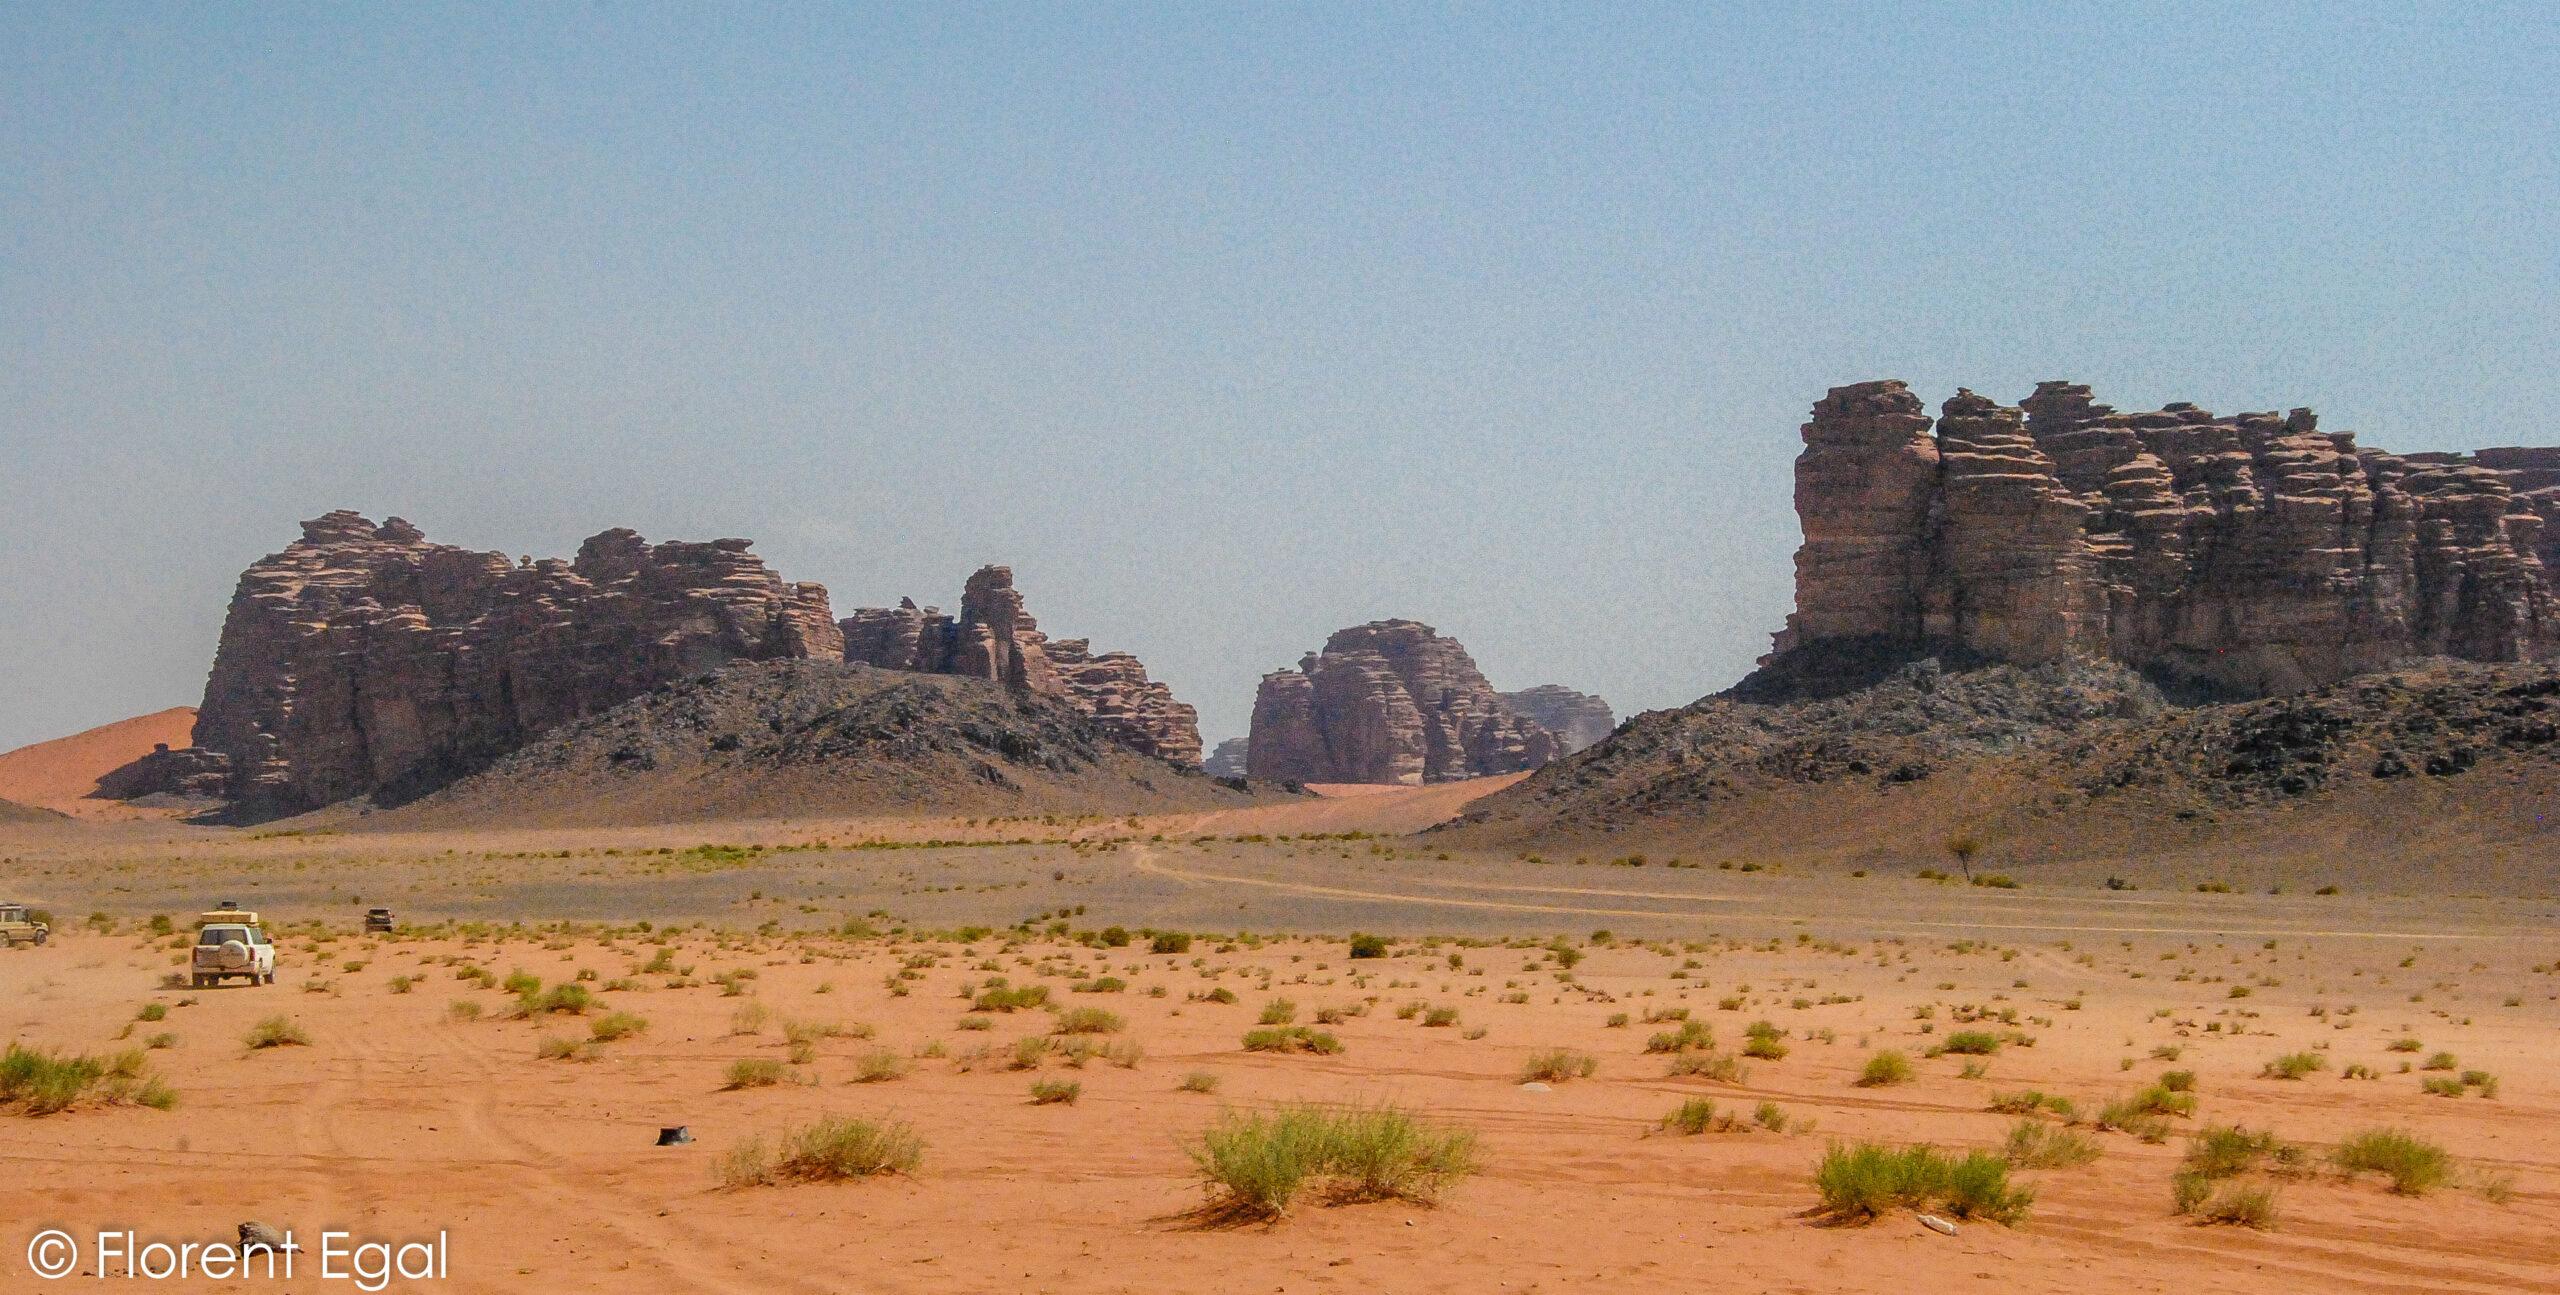 ซาอุดีอาระเบีย: สิ่งที่จะเห็นและคาดหวังในดินแดนแห่งทะเลทรายและโขดหิน?